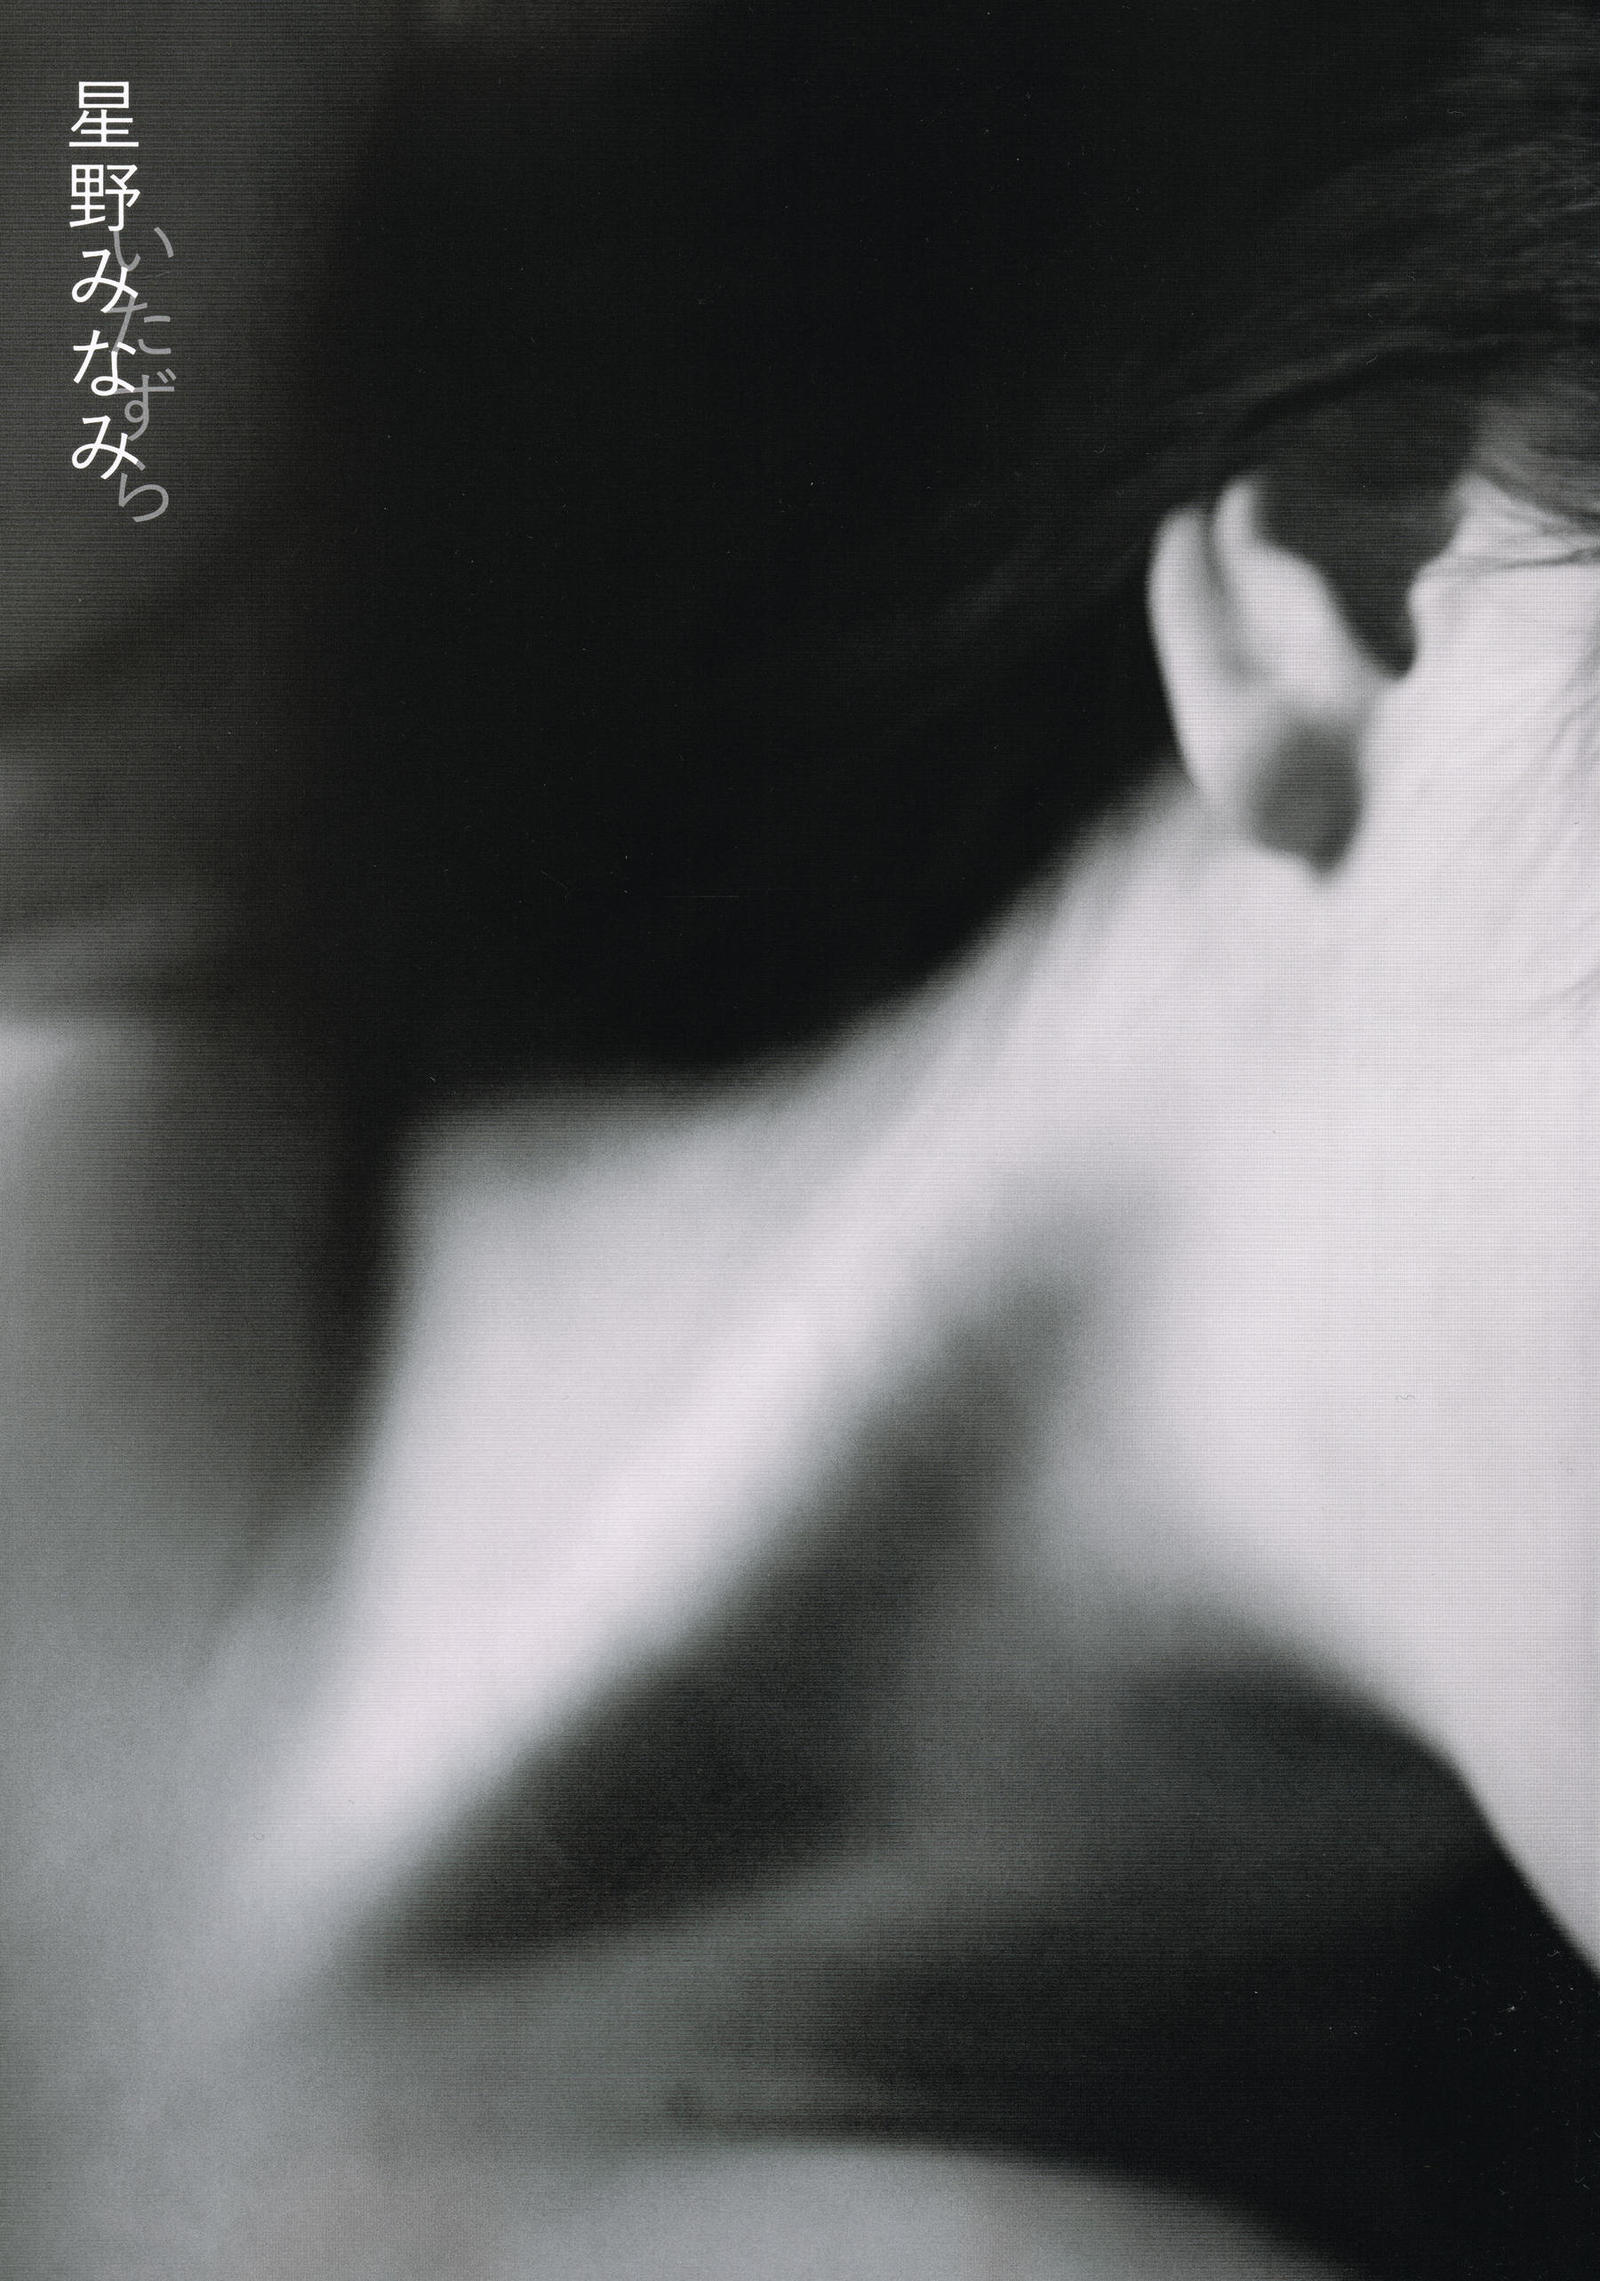 PhotoBook] Hoshino Minami 星野みなみ 1st 写真集 [Itazura] 写真辑[121](第2页)